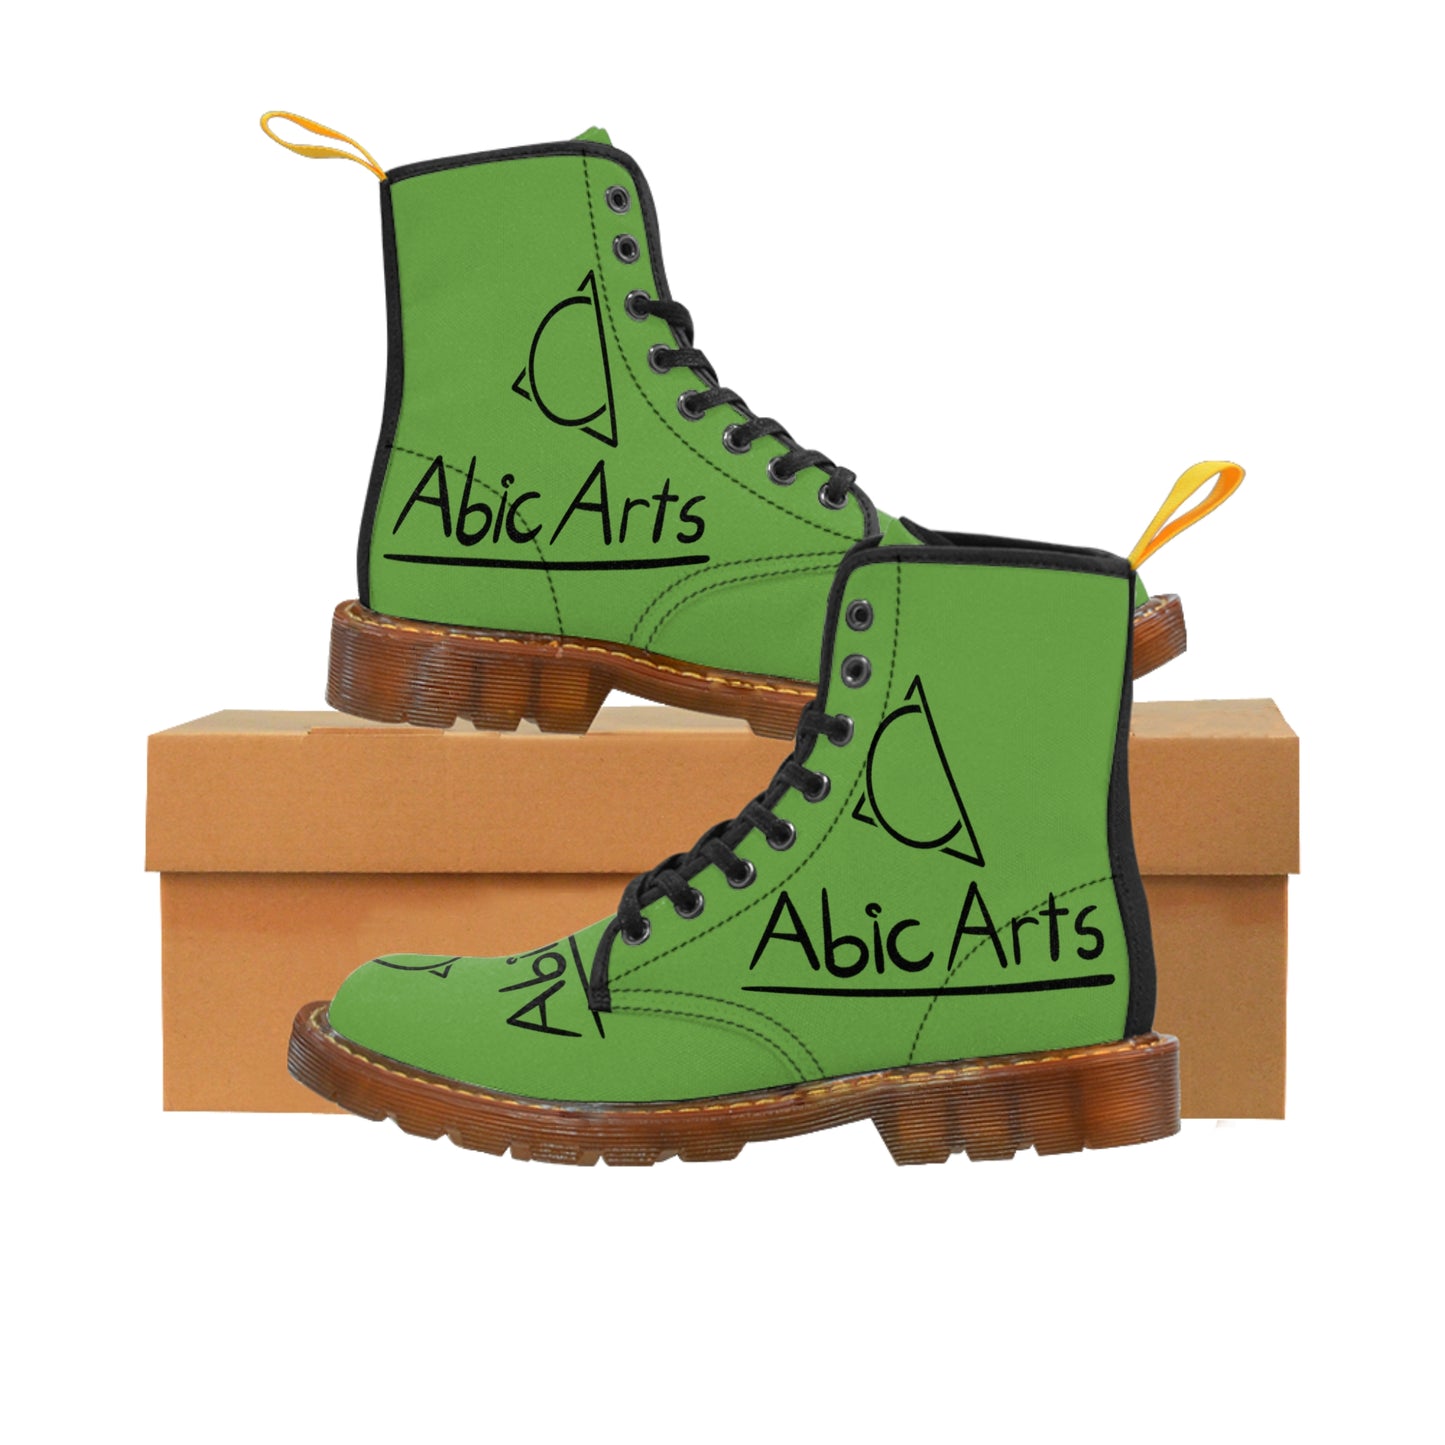 Men's Canvas Boots  "Abic Arts 2.0"